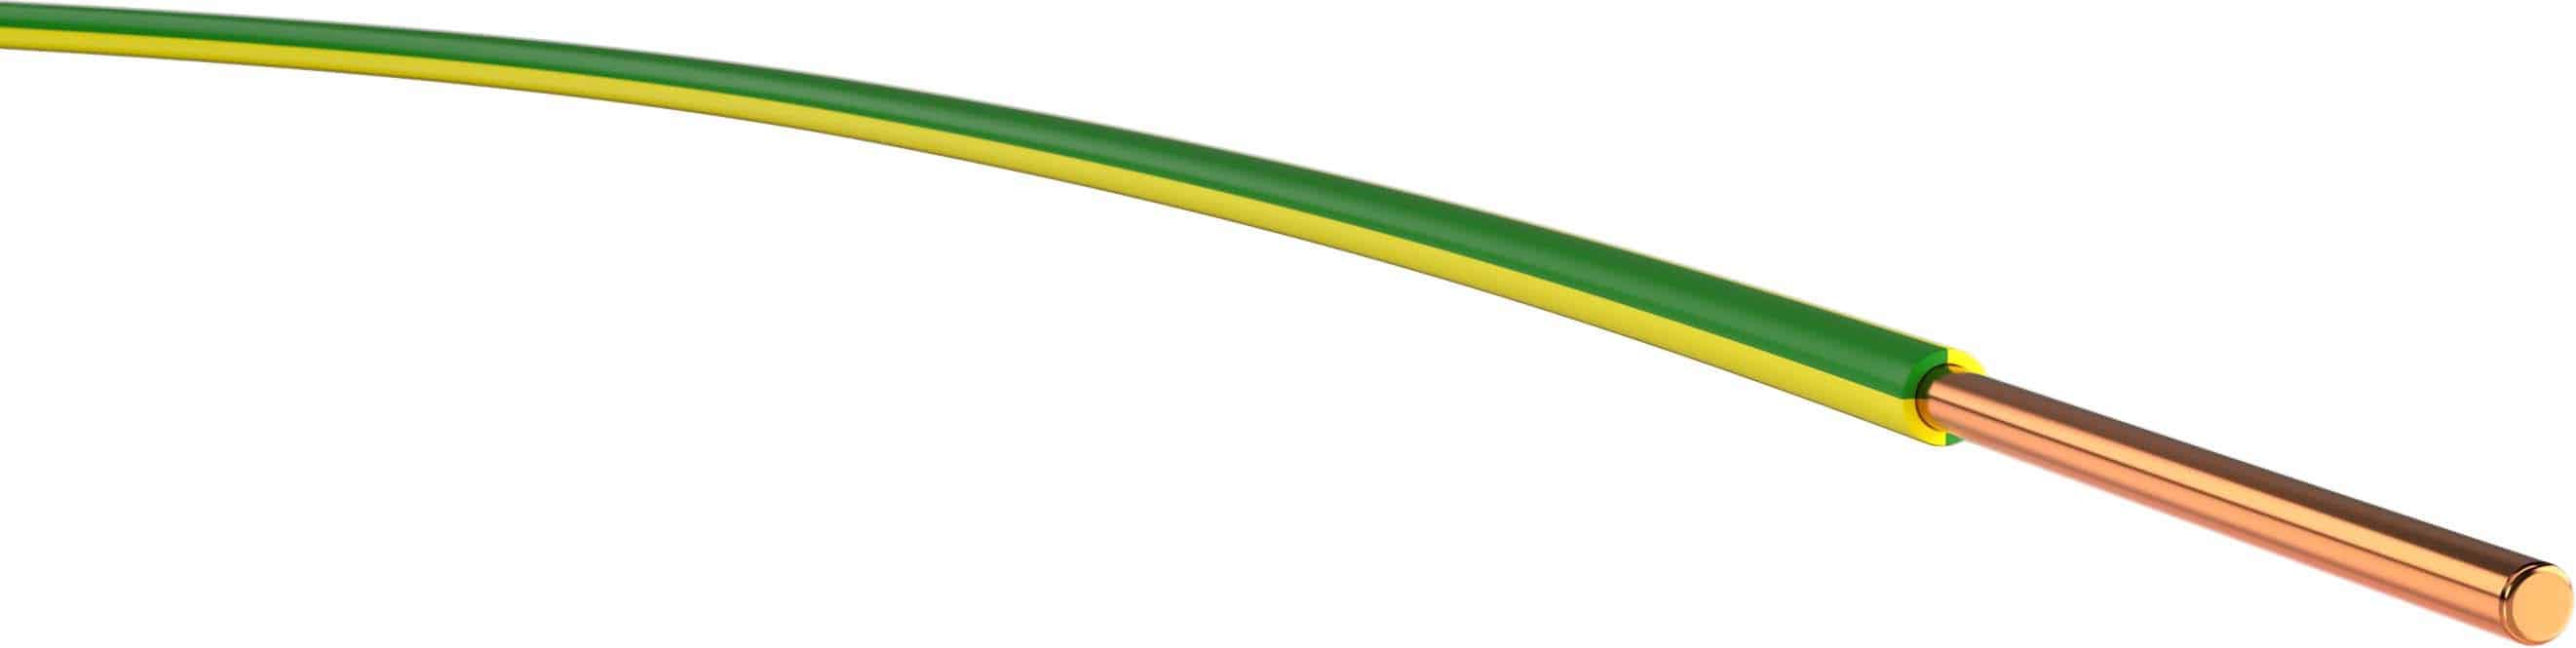 PVC Verdrahtungsleitung H07V-U 16 GN/GE eindrähtig 16 mm² grün/gelb 100m-Ring